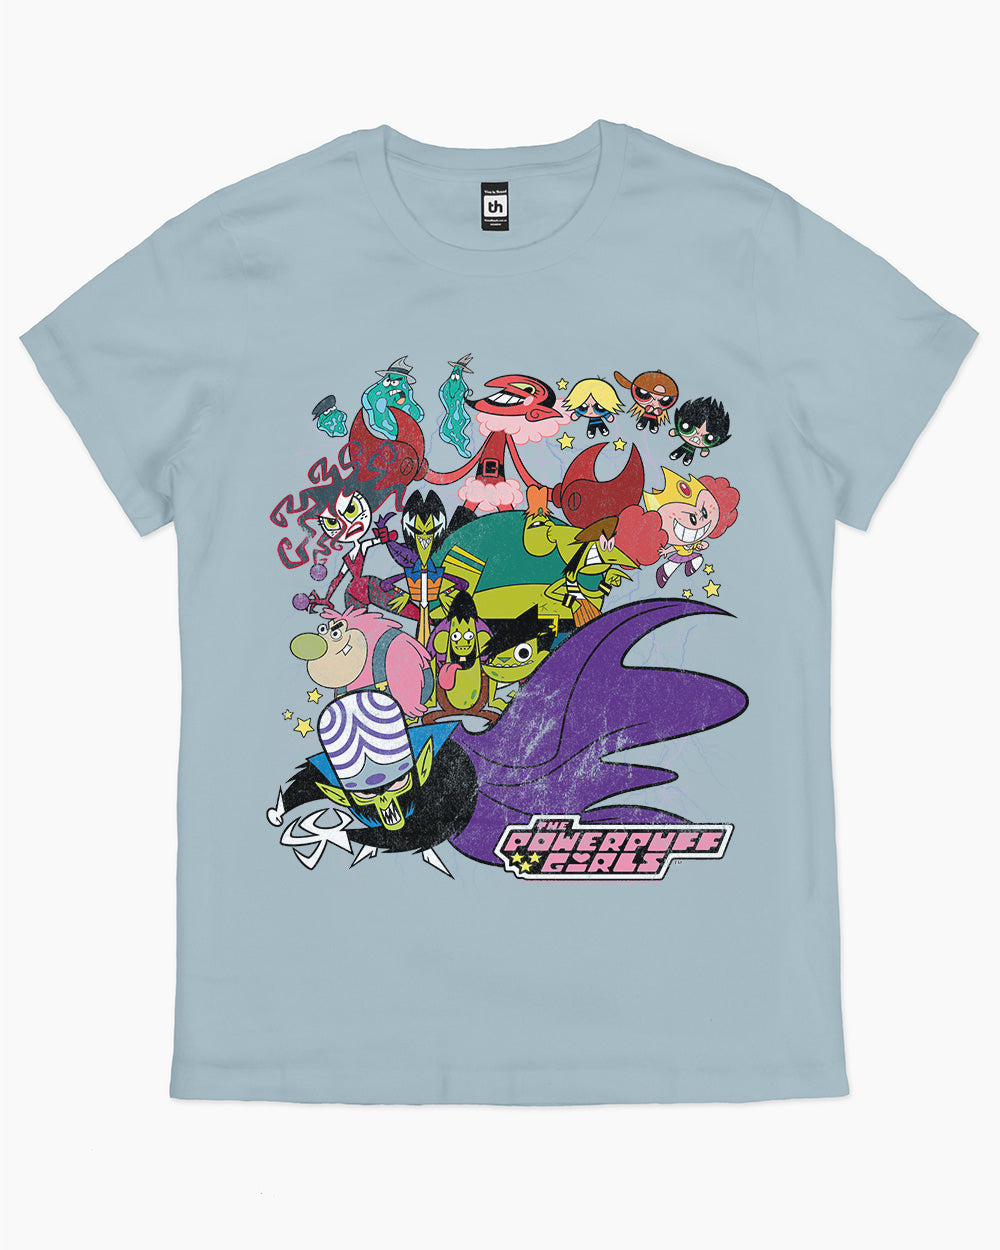 Powerpuff Villains T-Shirt | Official The Powerpuff Girls Merch